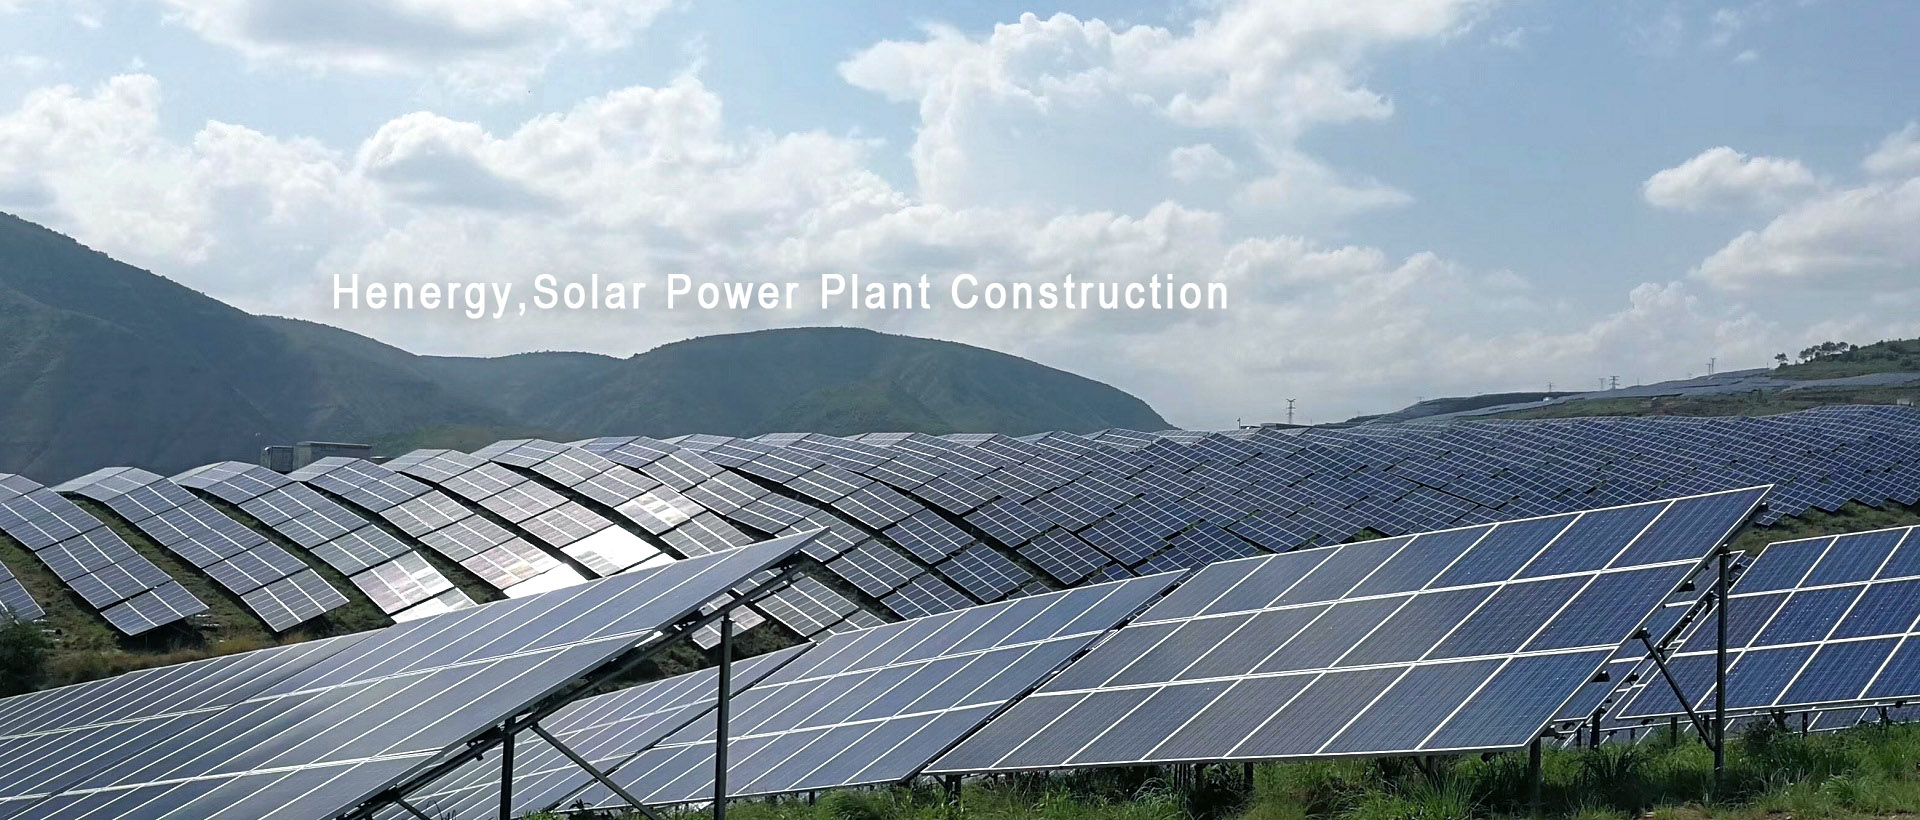 Henergy Solar Power Plant